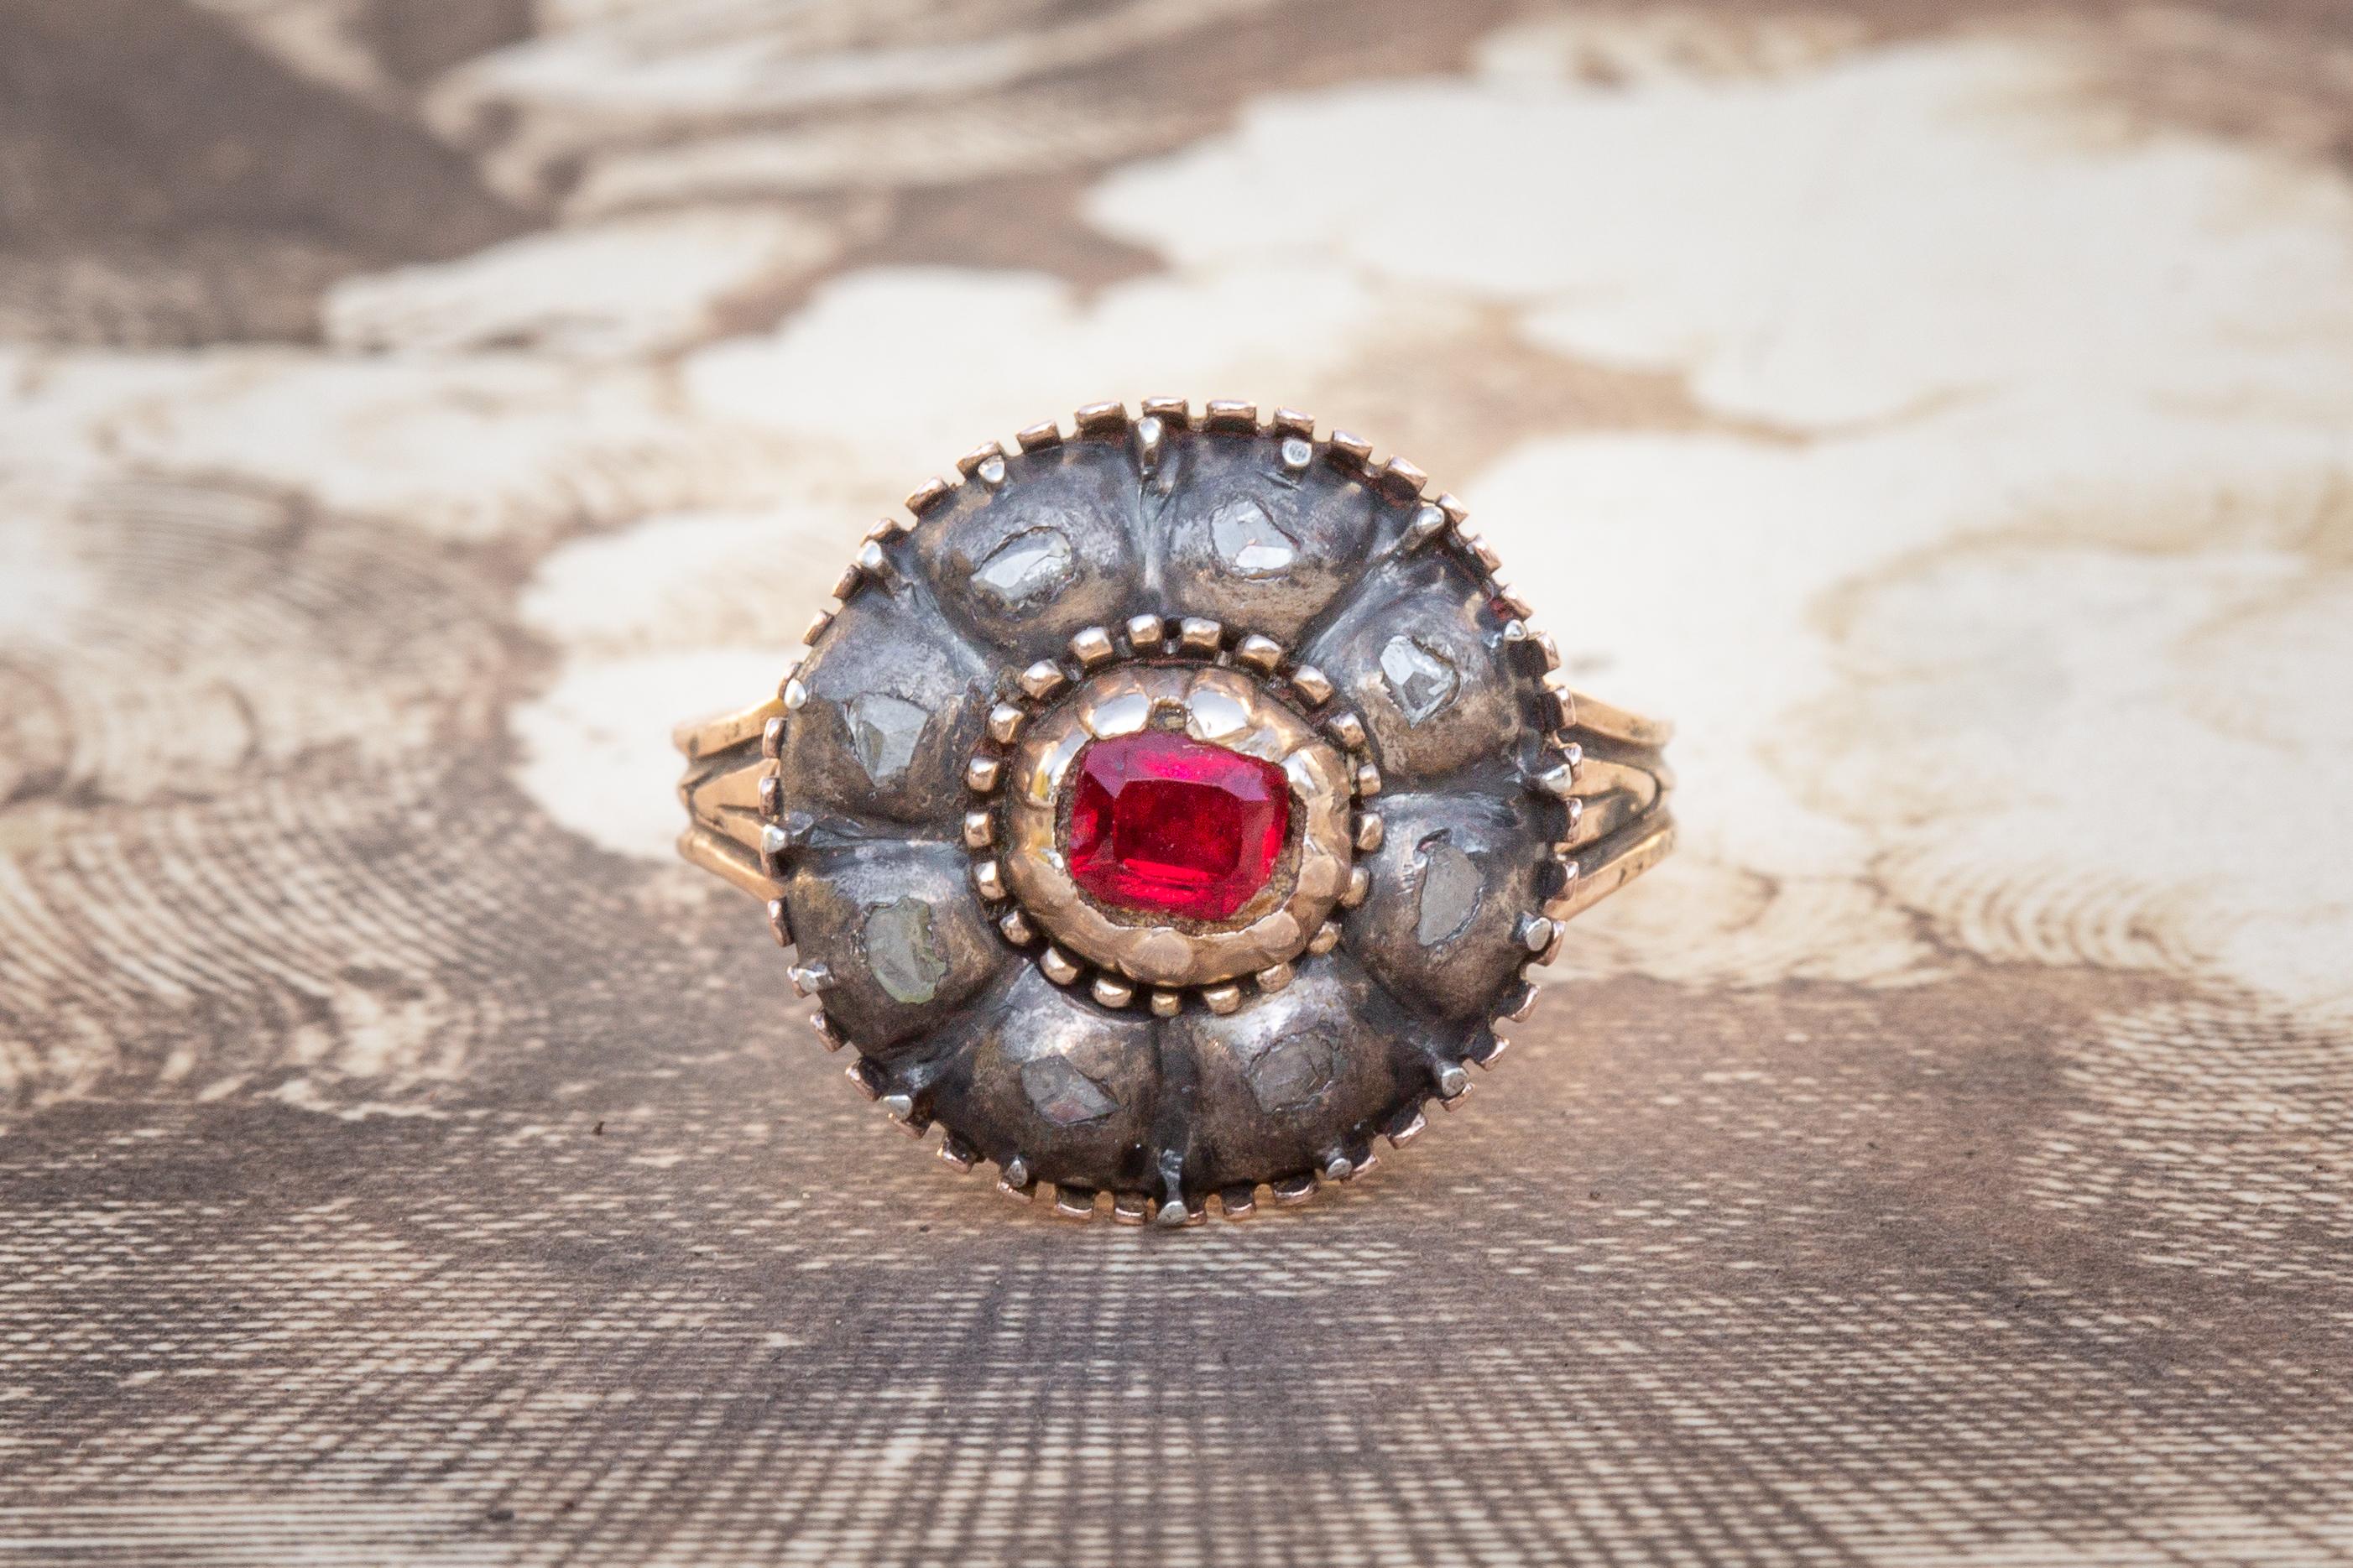 Dieser schöne antike italienische Cluster-Ring stammt aus der Zeit um 1800 und ist mit einem Granat und Diamanten besetzt. In der Mitte des Ringkopfes befindet sich ein leuchtend roter Granat, umgeben von einem Cluster aus 8 flachen Diamanten im